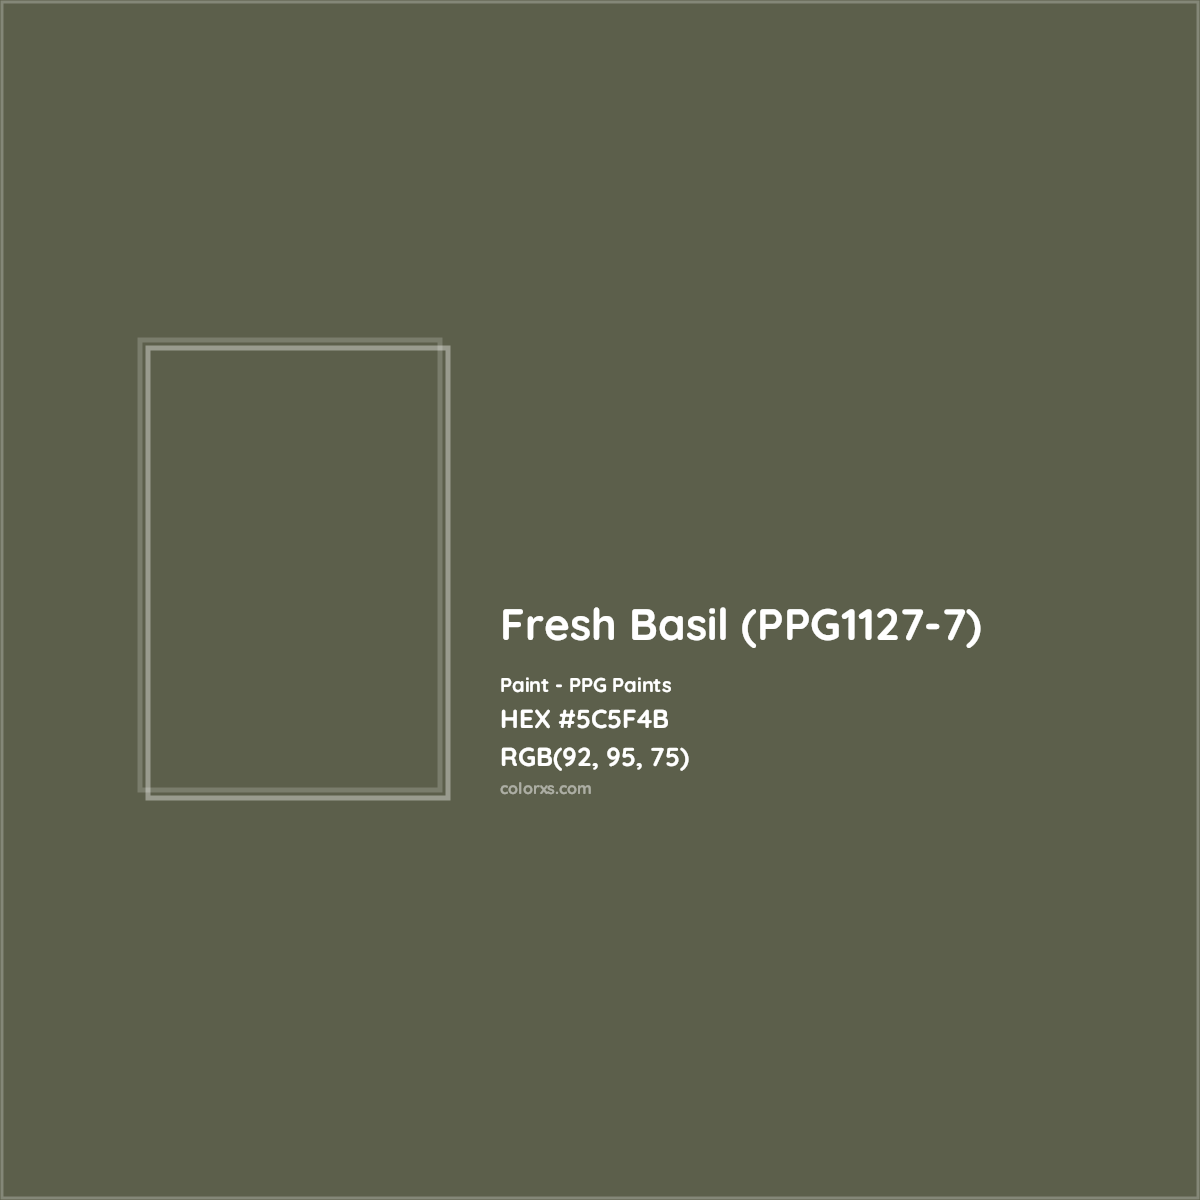 HEX #5C5F4B Fresh Basil (PPG1127-7) Paint PPG Paints - Color Code